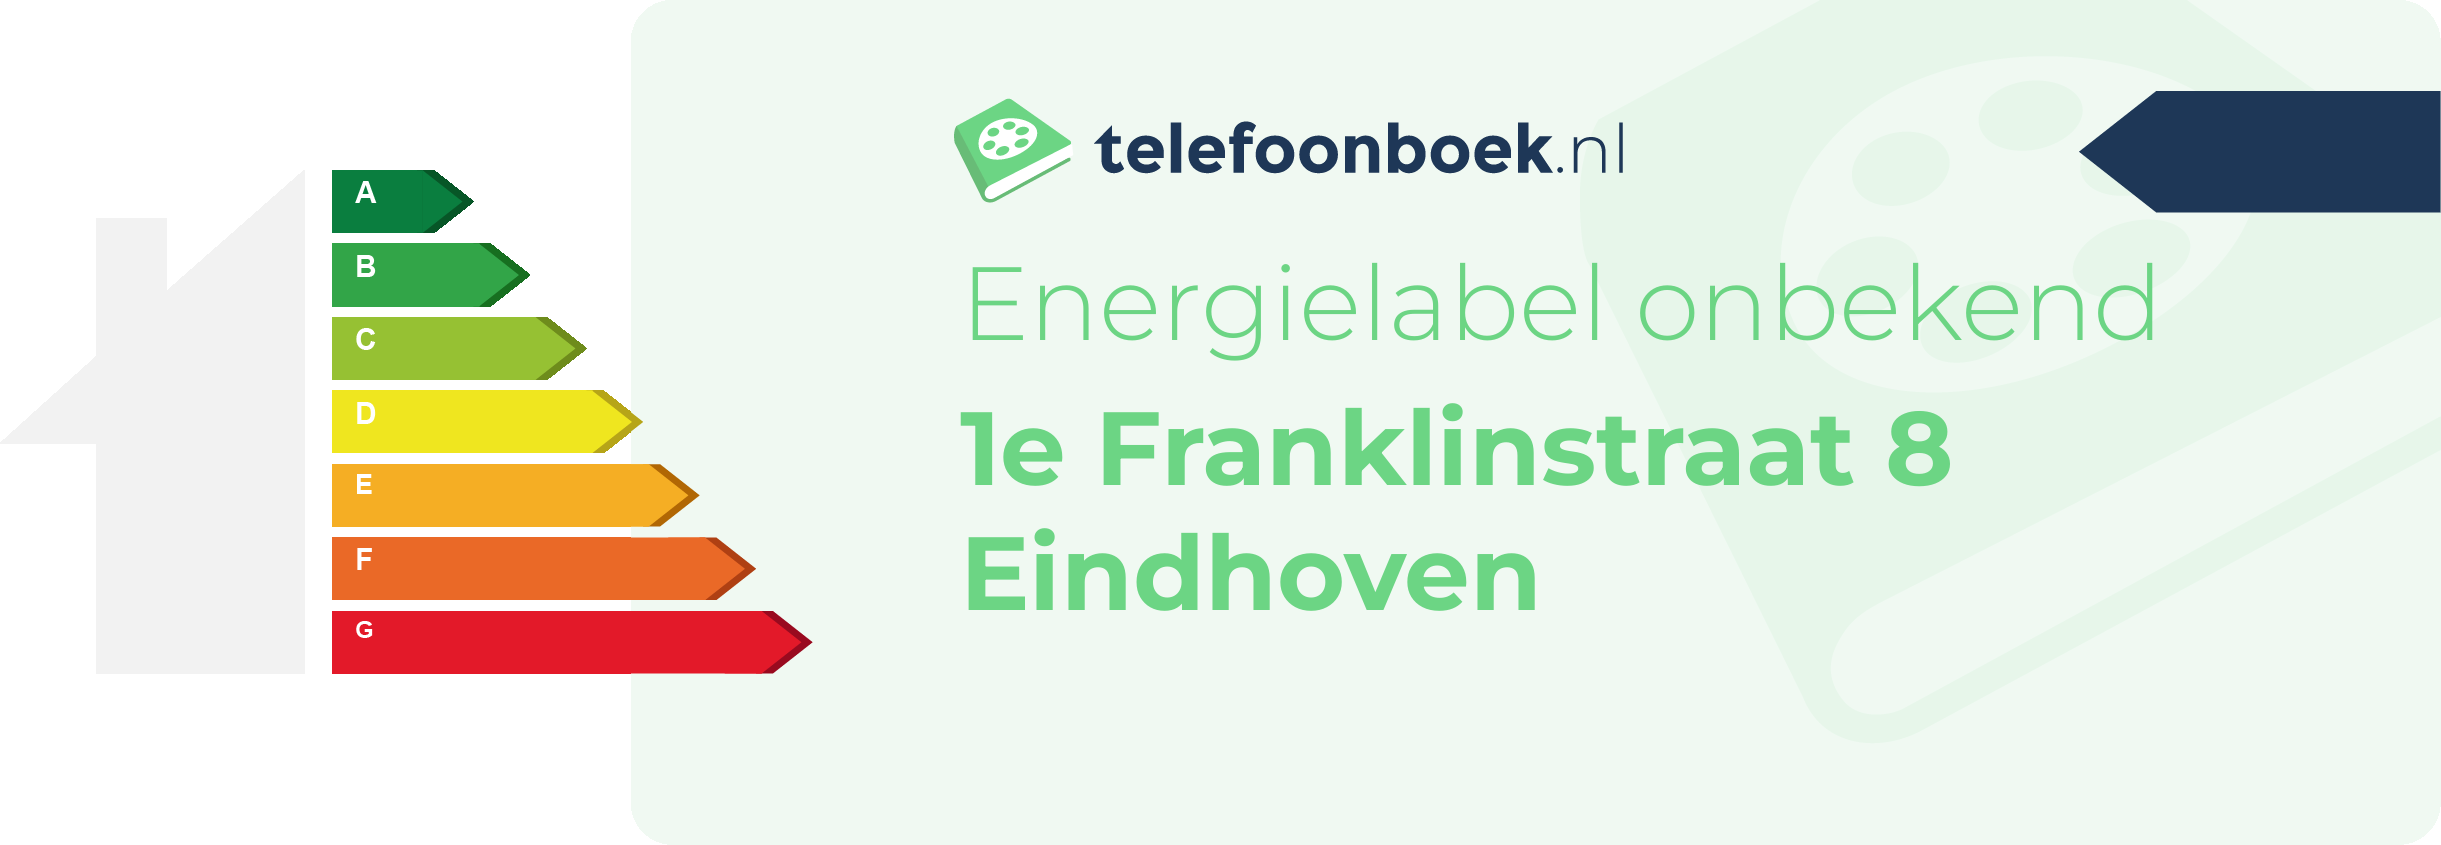 Energielabel 1e Franklinstraat 8 Eindhoven